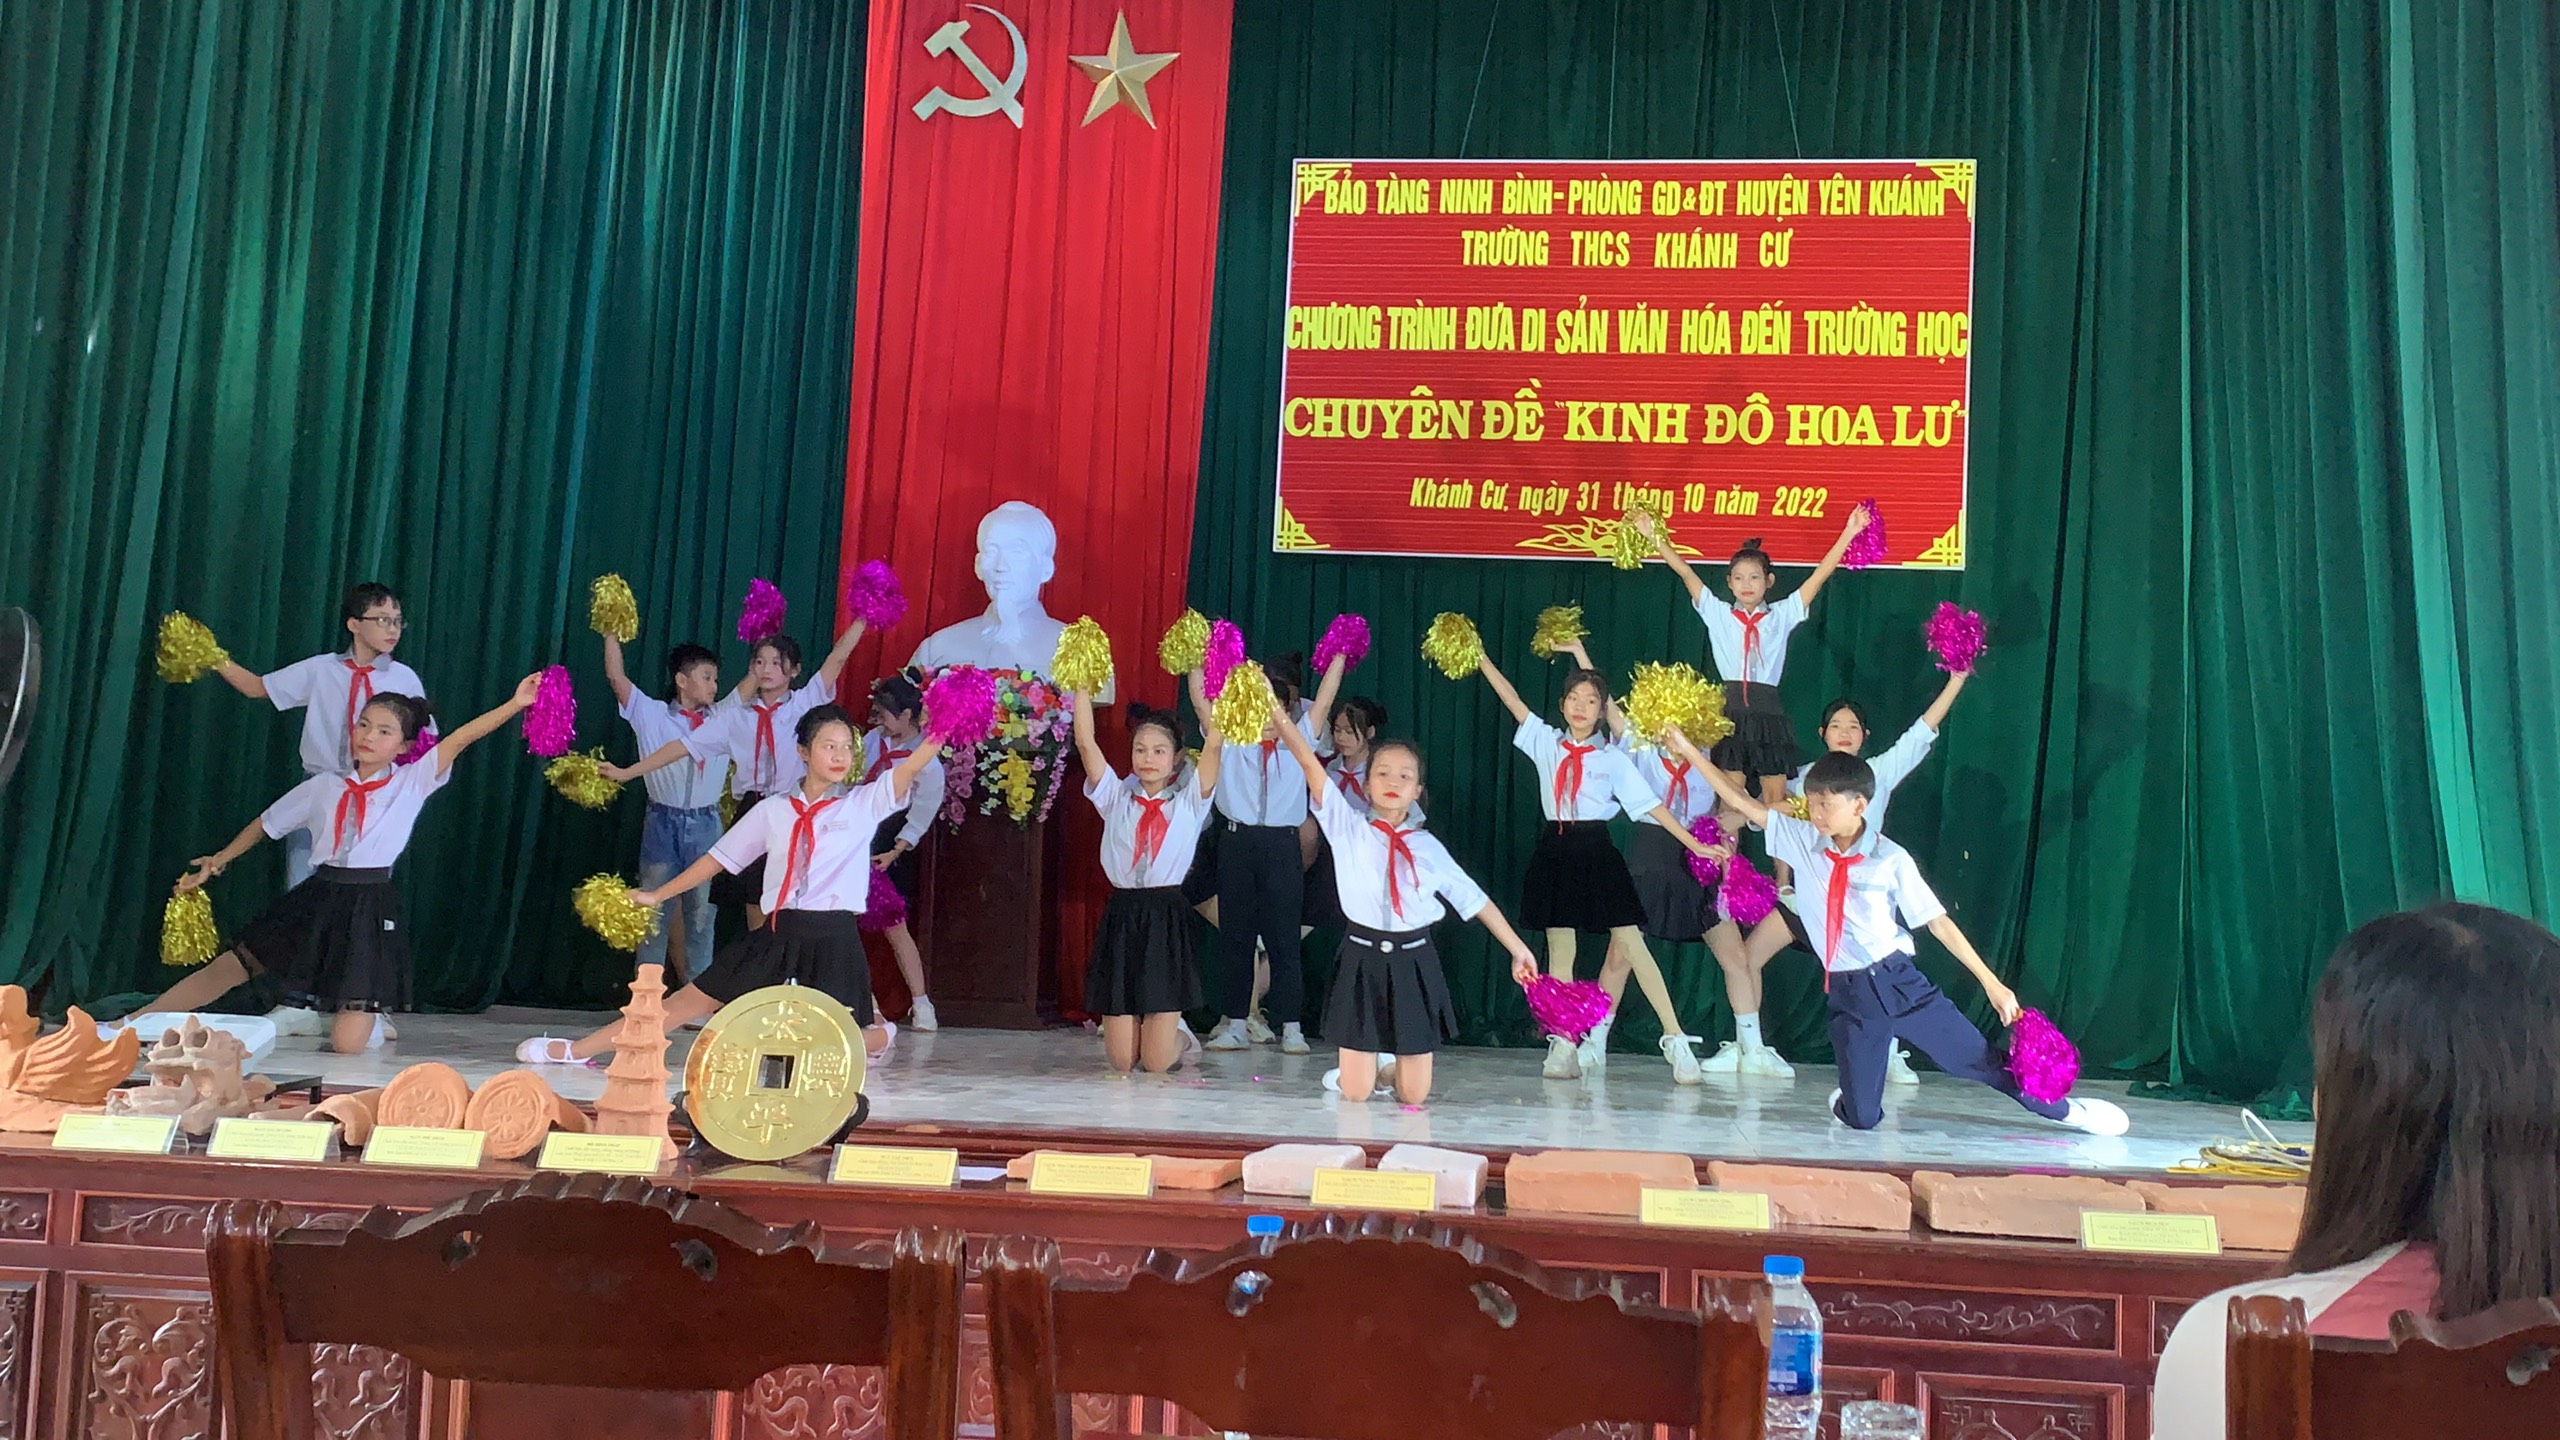 Trường THCS Khánh Cư phối hợp với viện bảo tàng Ninh Bình tổ chức chuyên đề “Đưa di sản văn hóa đến trường học”.